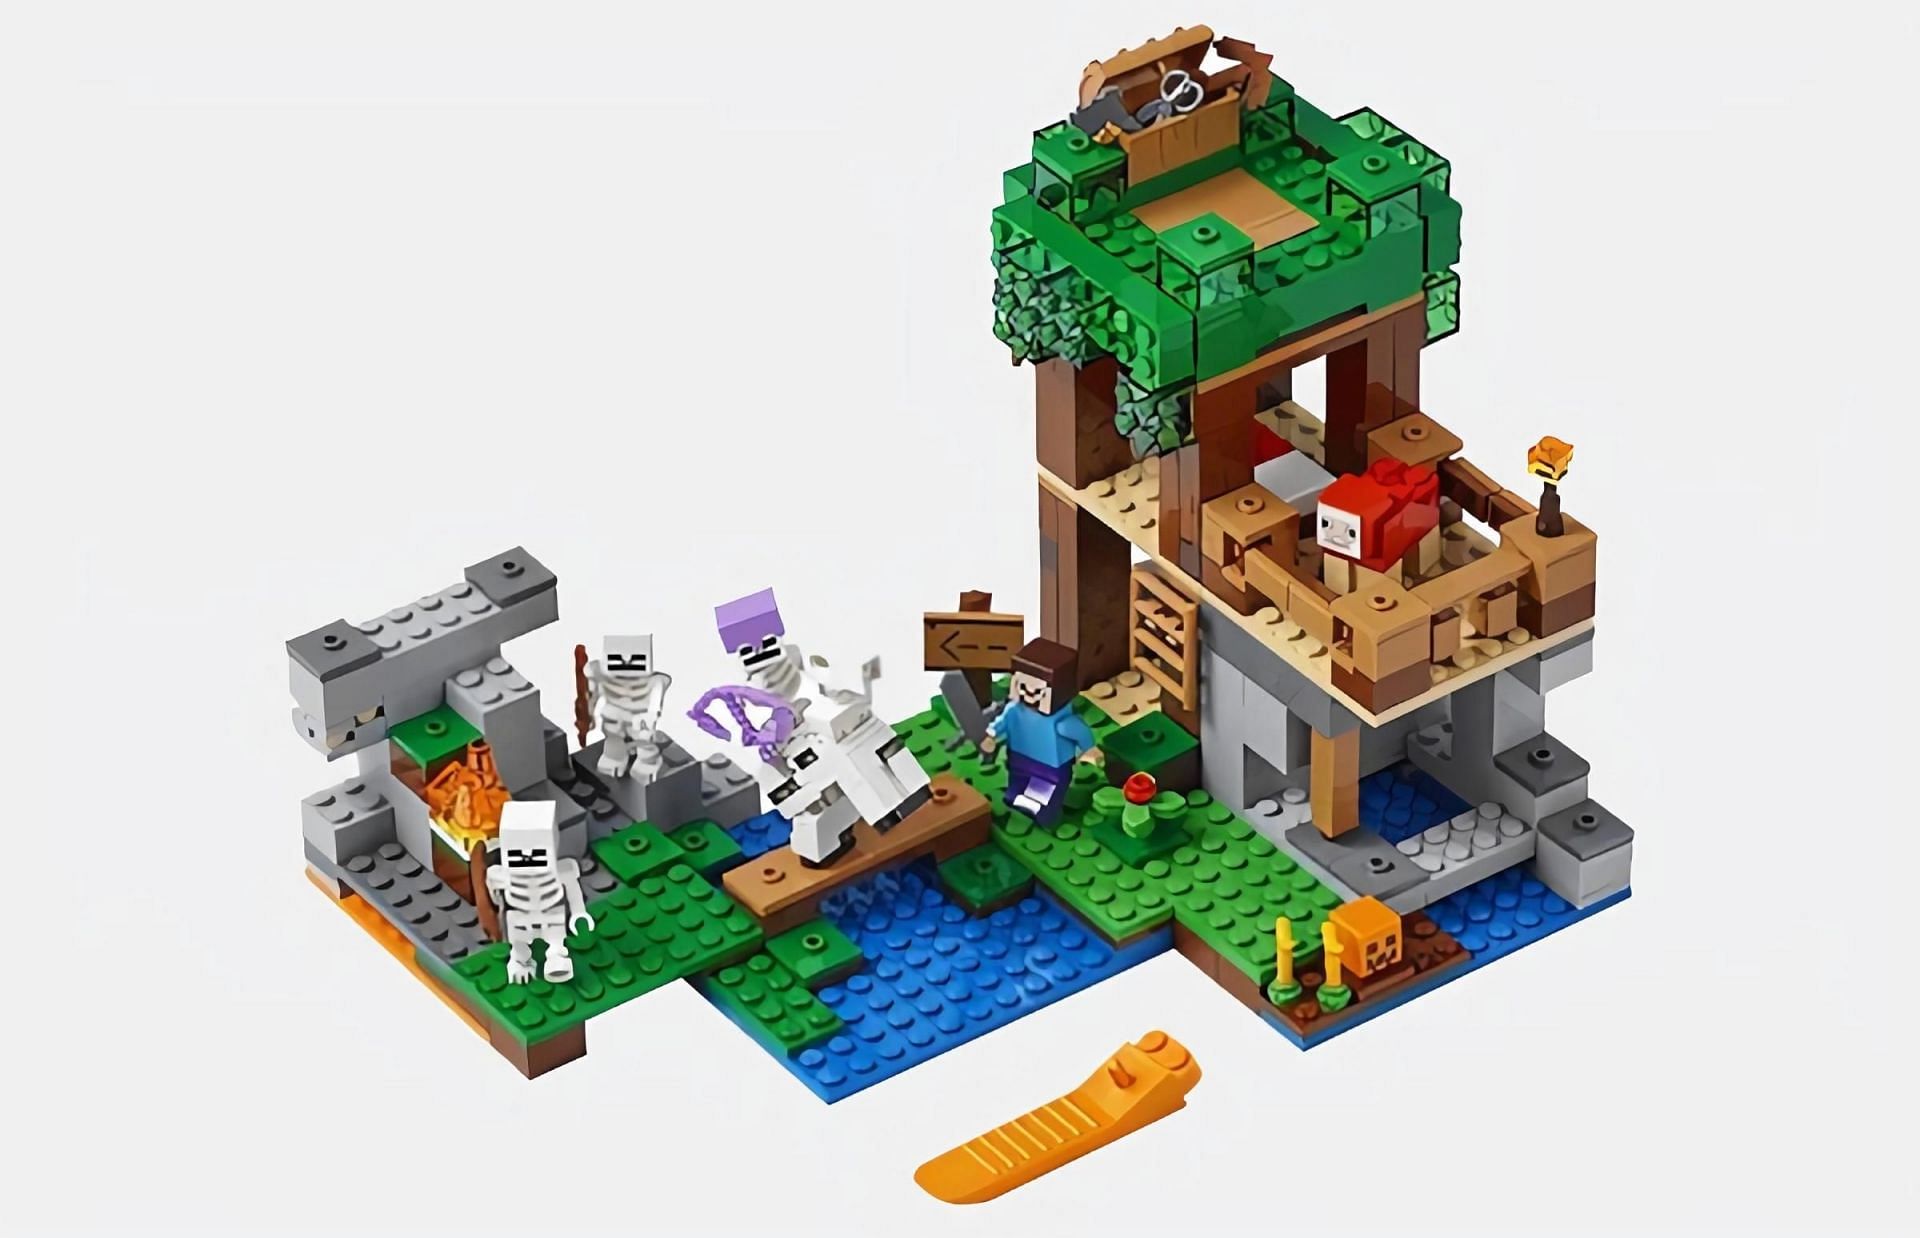 The Skeleton Attack Lego set (Image via LEGO)